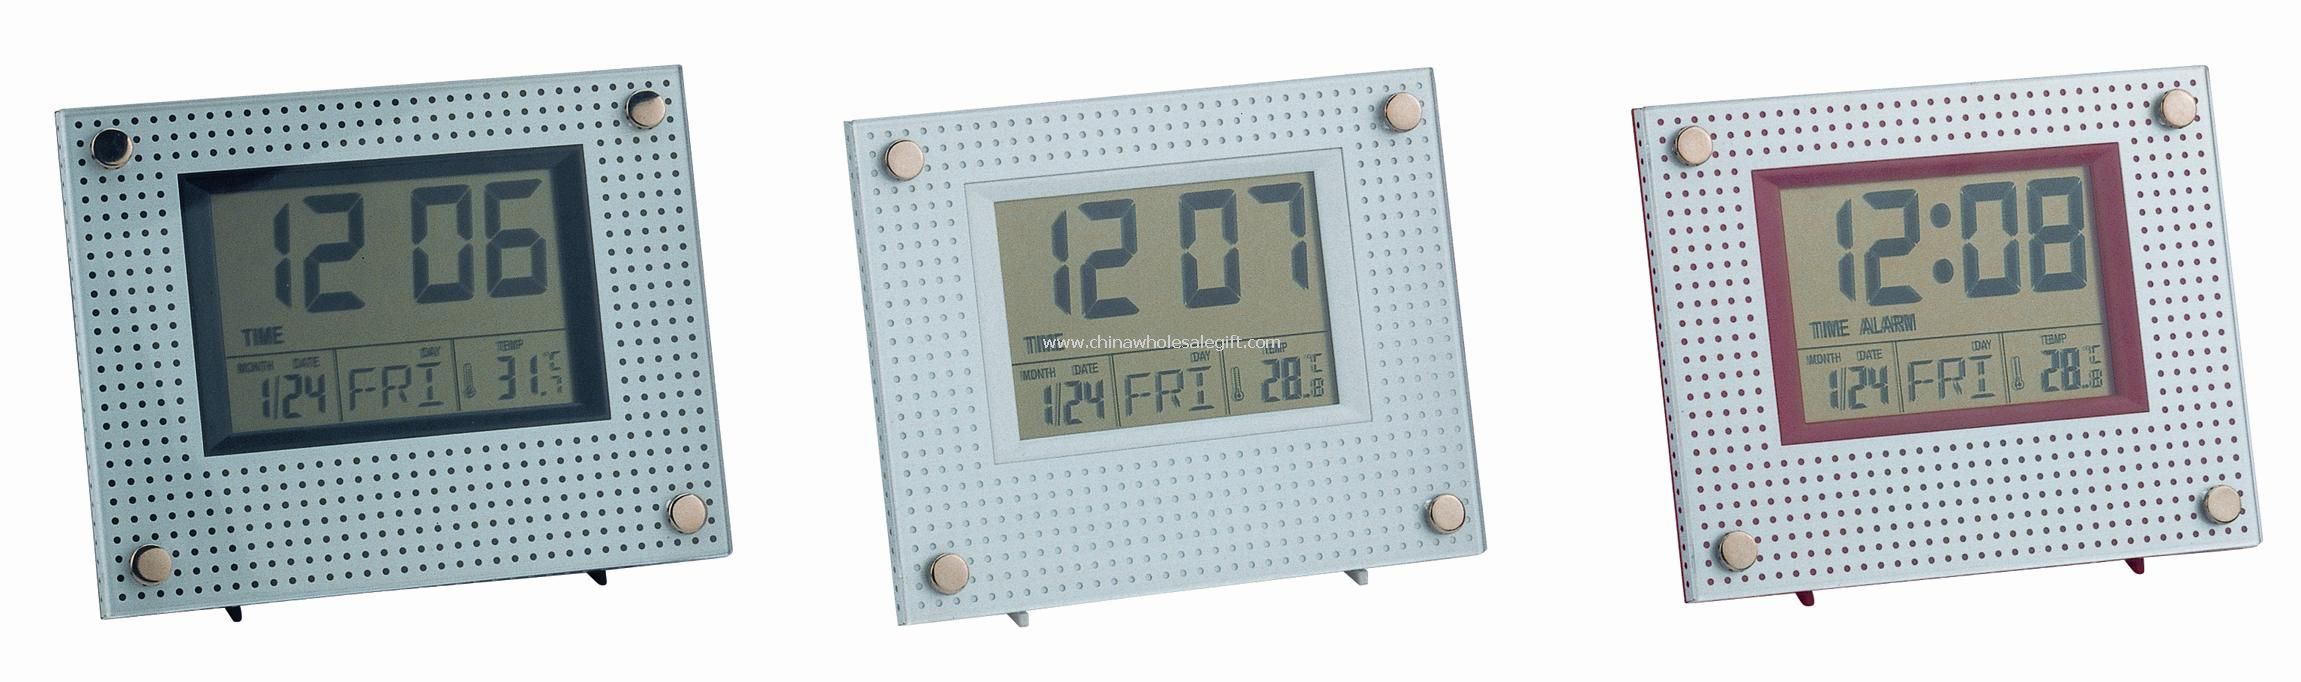 Visor LCD grande calendário relógio